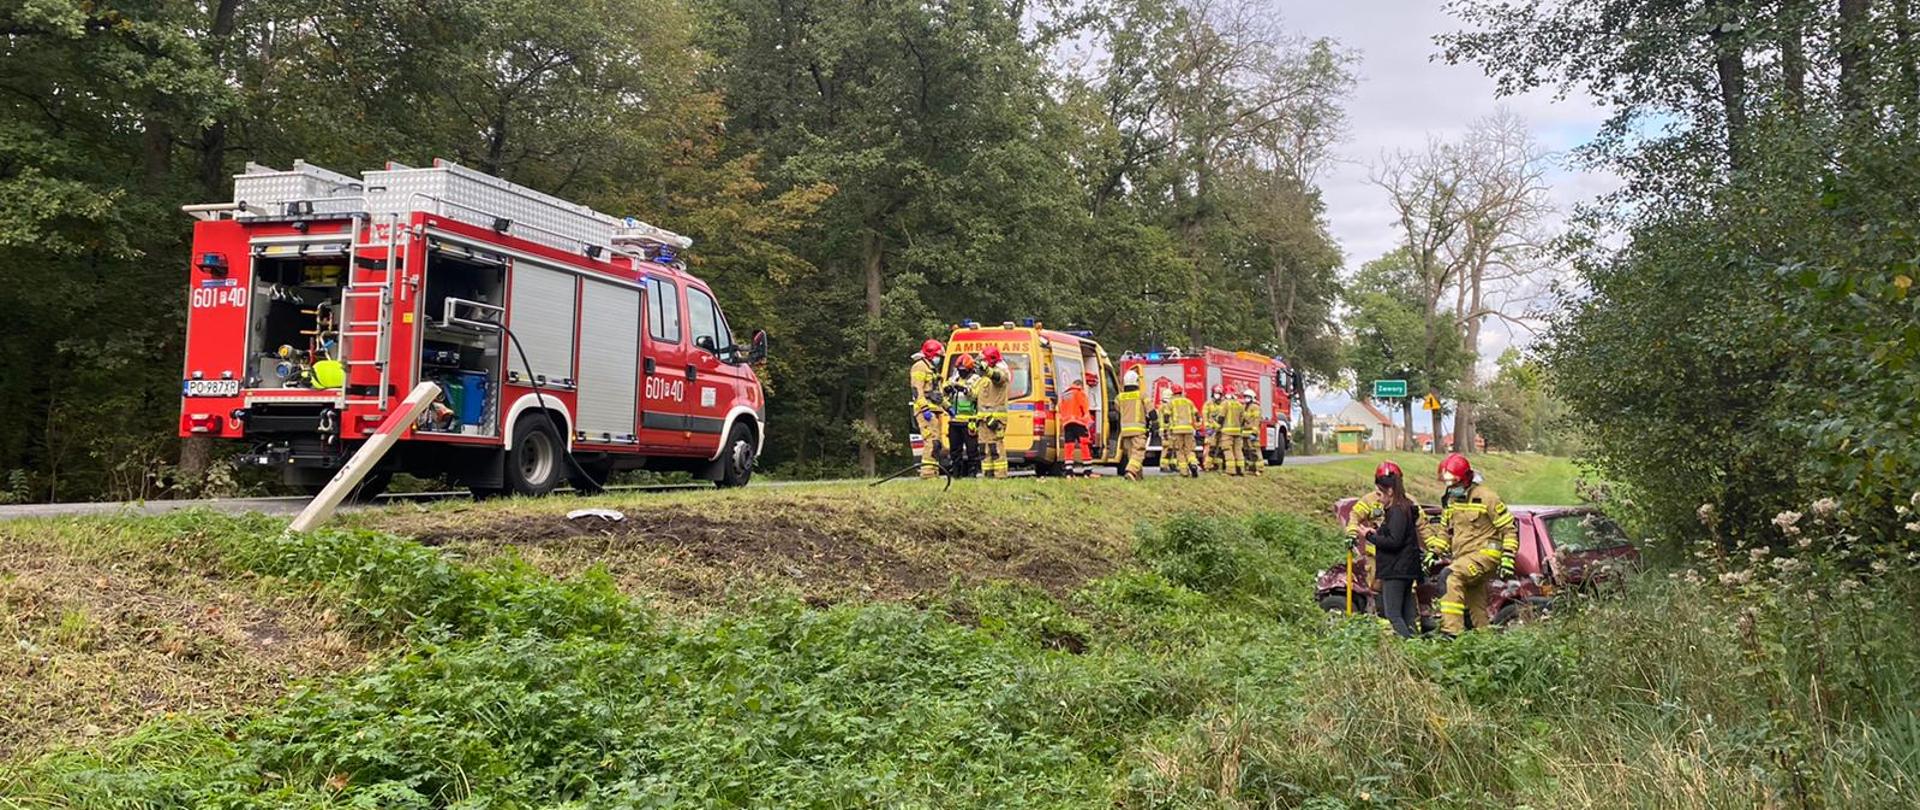 Na zdjęciu pojazdy pożarnicze z ratownikami oraz pojazd osobowy biorący udział w zdarzeniu w rowie